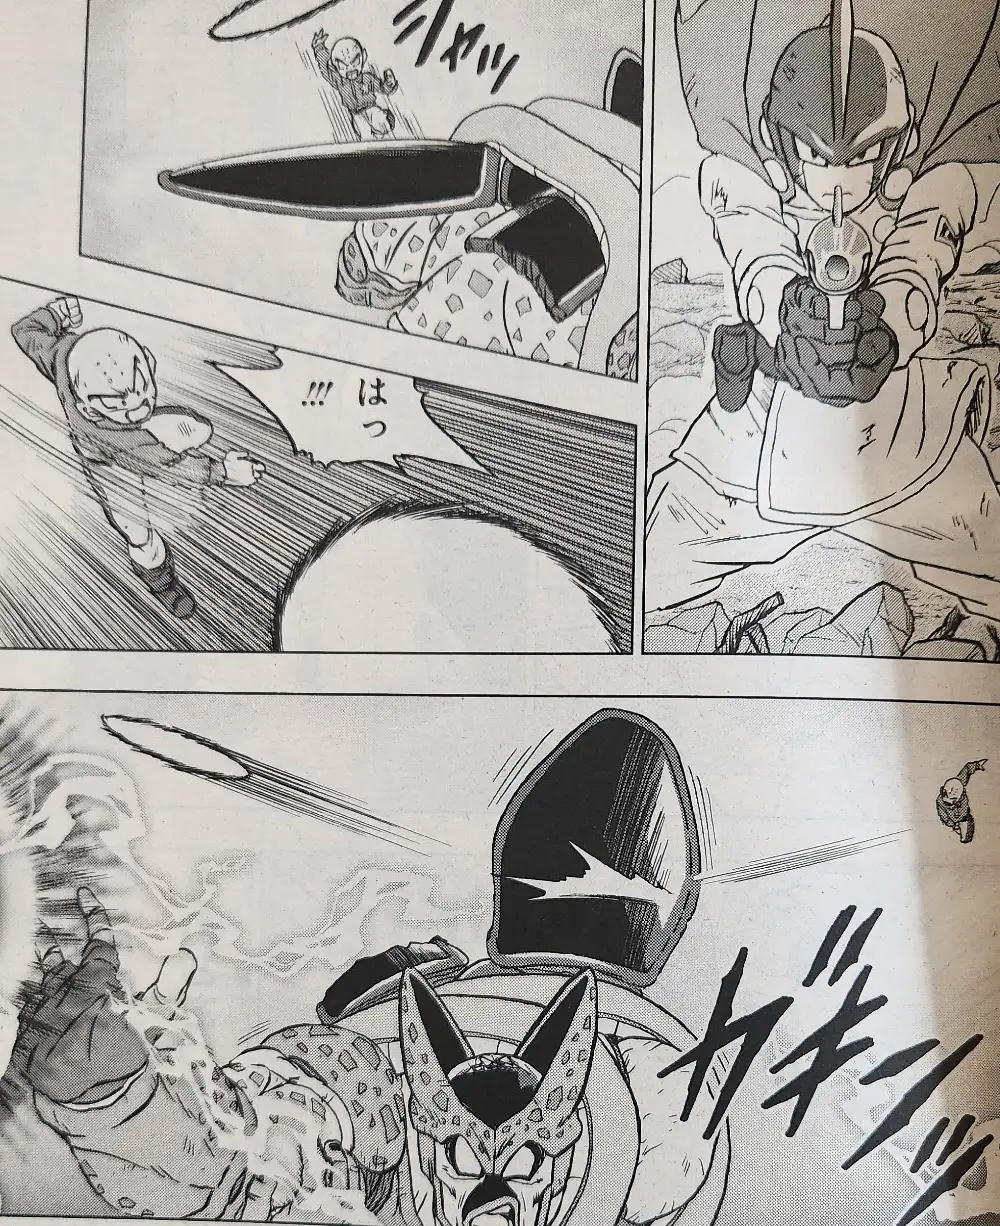 Gohan Beast dans le manga DBS chapitre 99 Image 000010